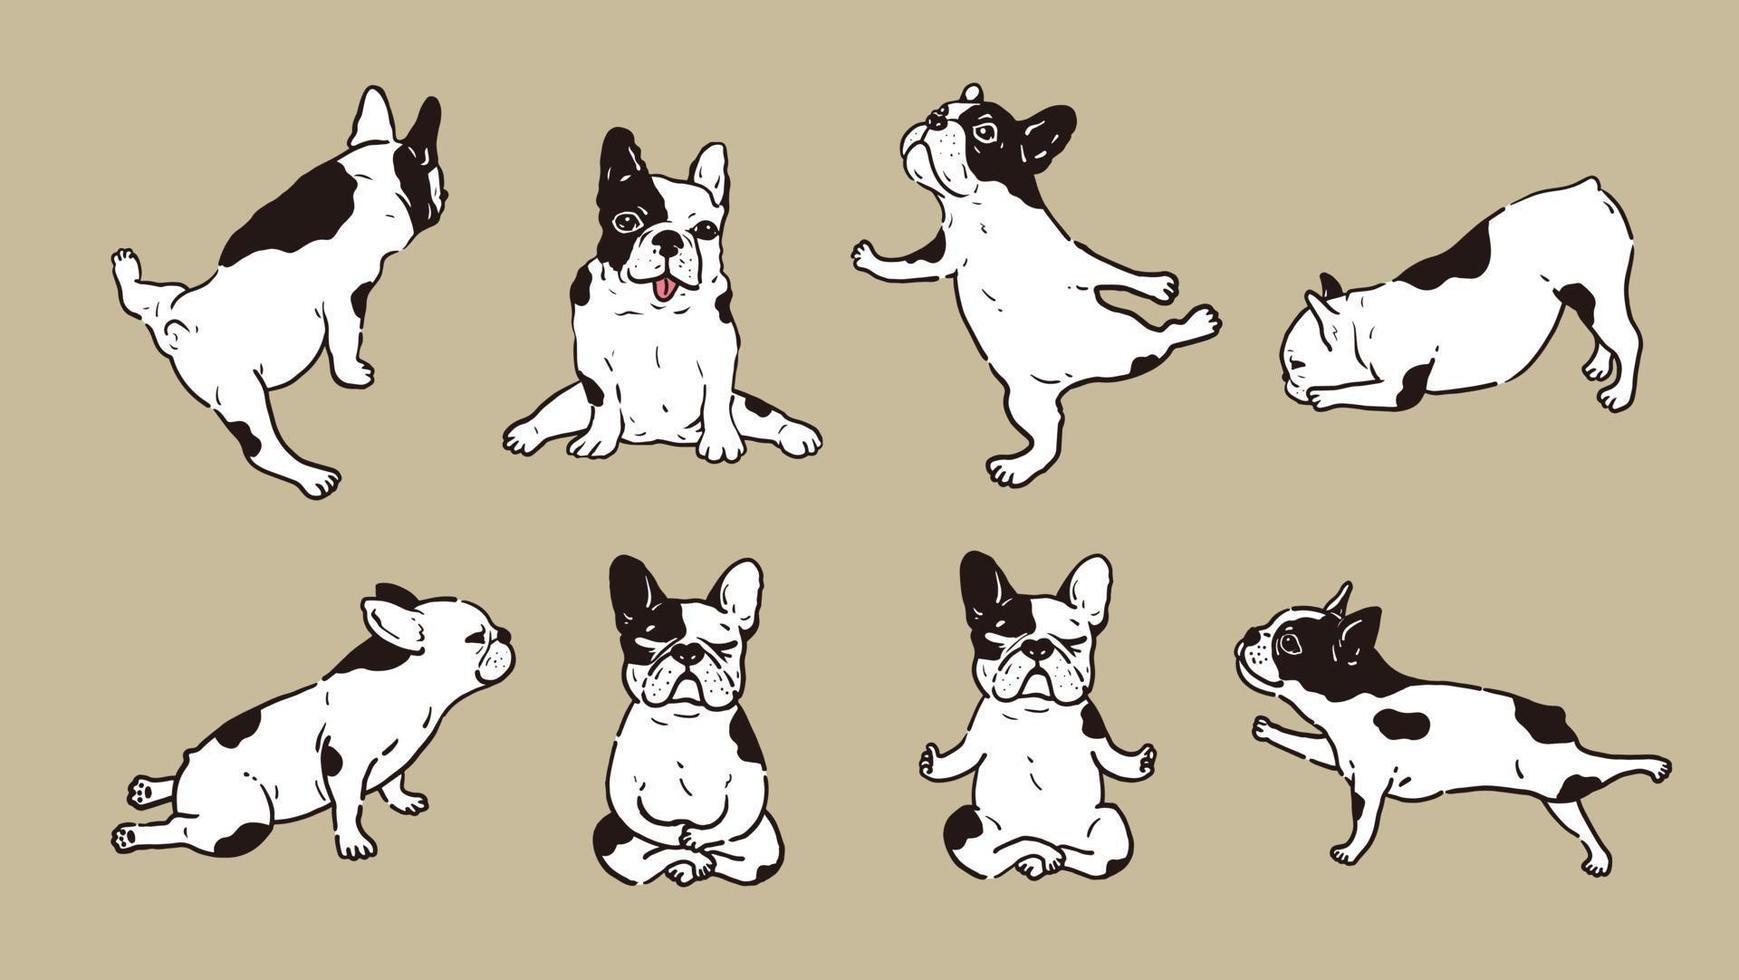 söt fransk bulldog yogaställning namaste övning med 8 poser vektor